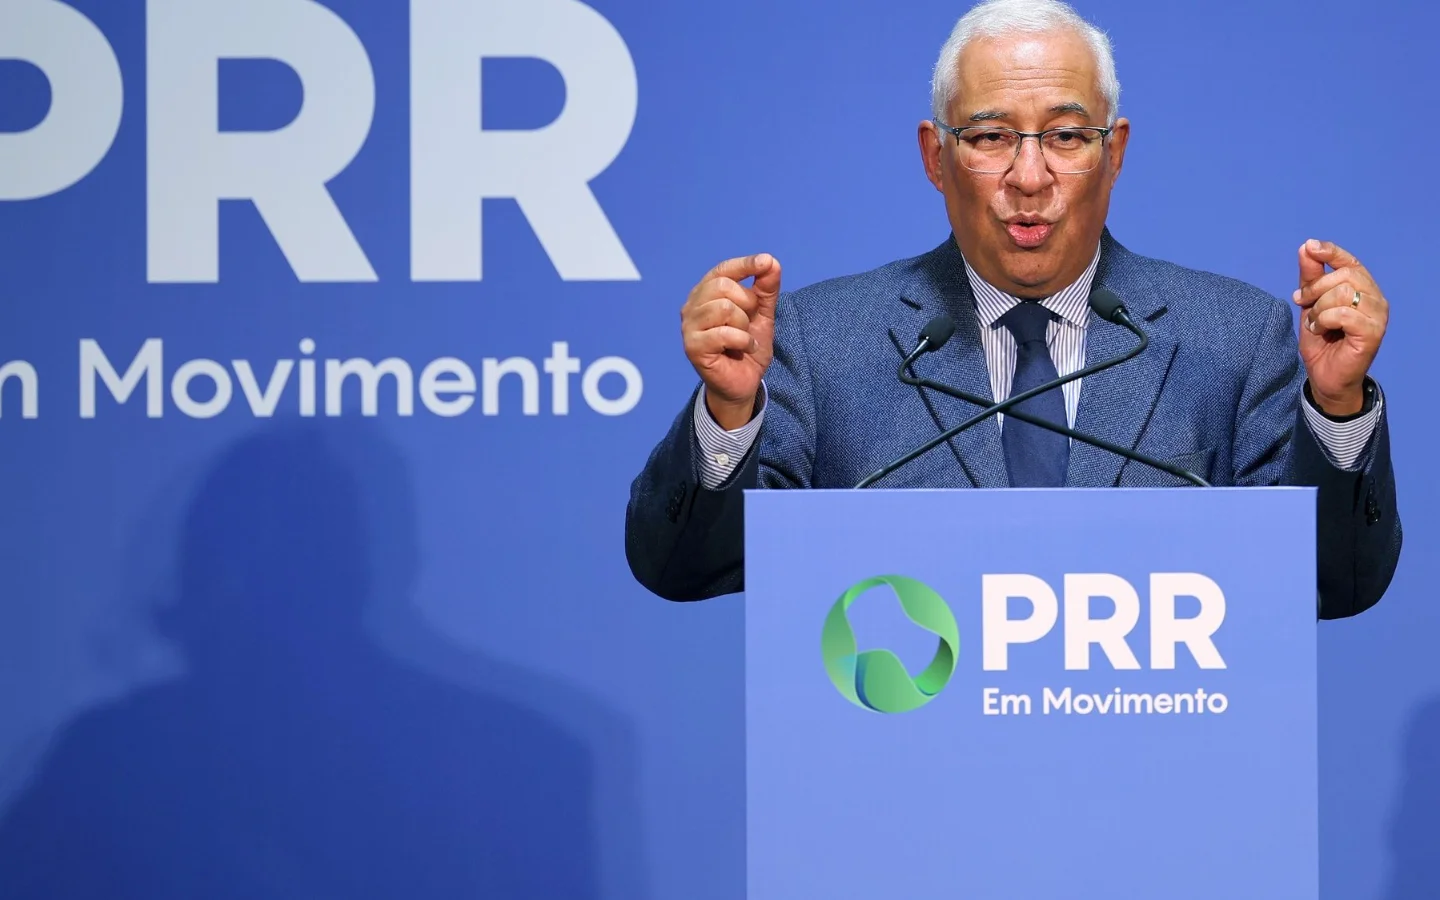 PRR de Portugal recebeu aprovação do Ecofin